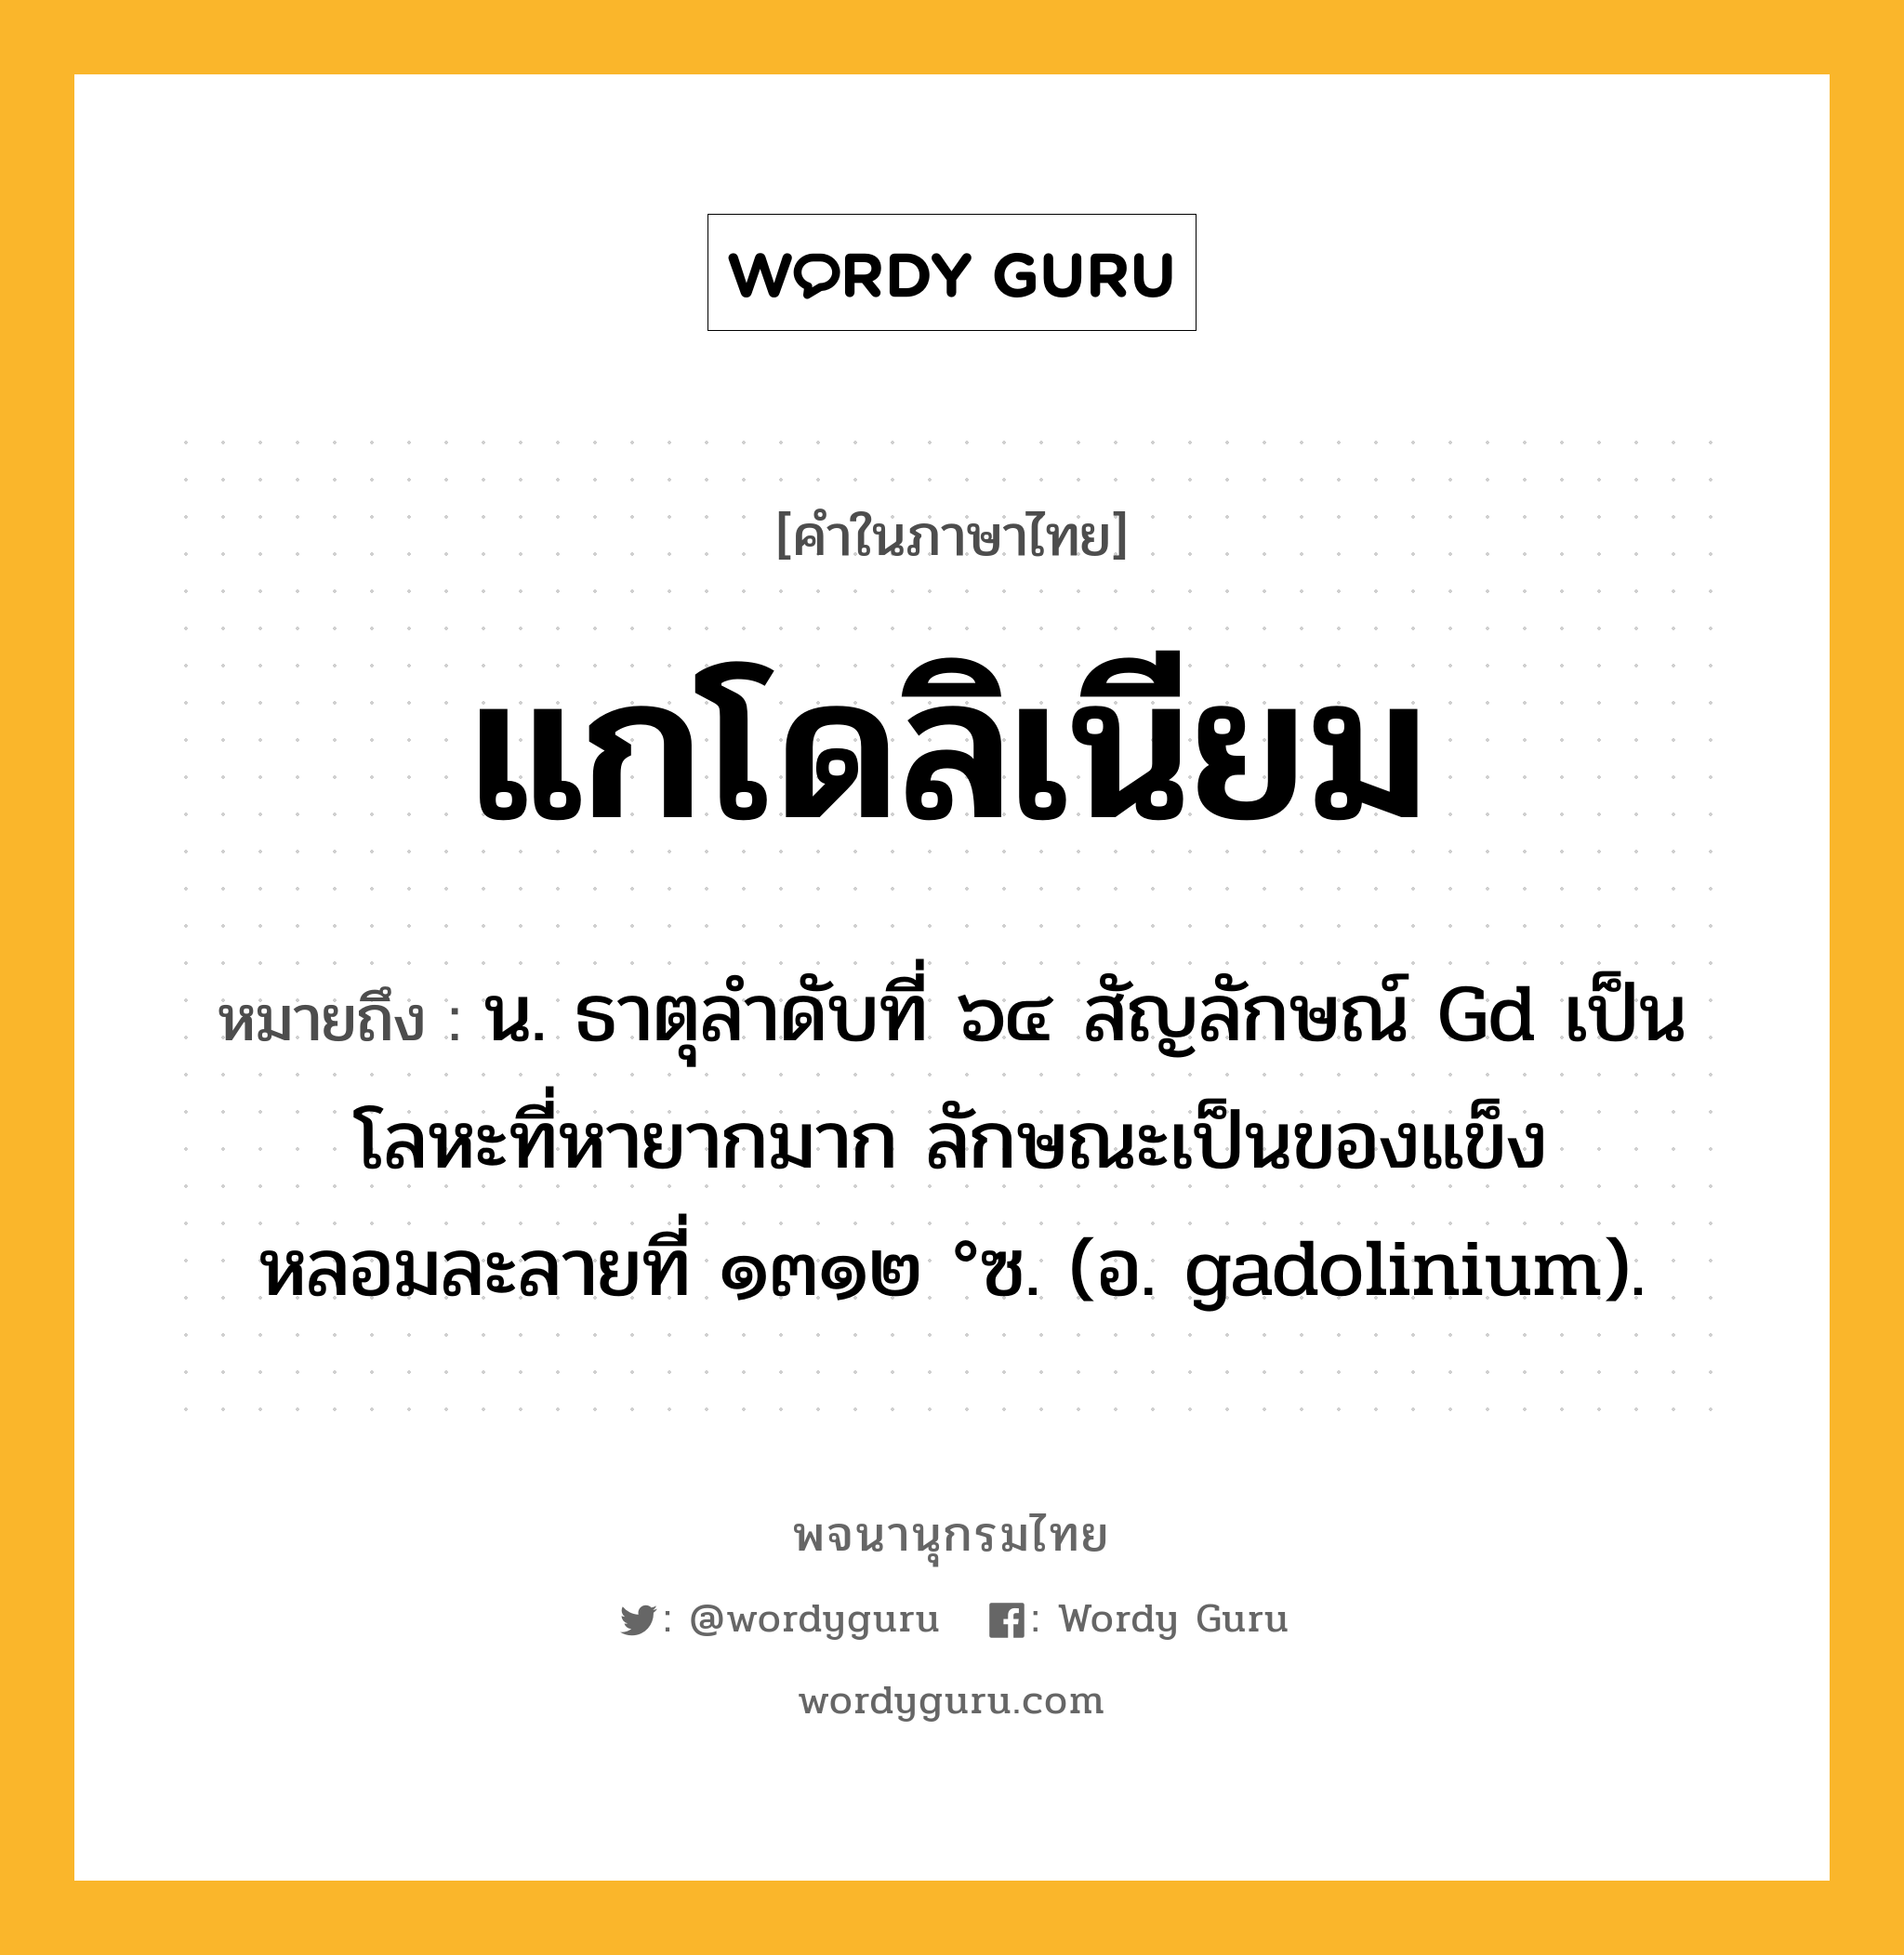 แกโดลิเนียม หมายถึงอะไร?, คำในภาษาไทย แกโดลิเนียม หมายถึง น. ธาตุลําดับที่ ๖๔ สัญลักษณ์ Gd เป็นโลหะที่หายากมาก ลักษณะเป็นของแข็ง หลอมละลายที่ ๑๓๑๒ °ซ. (อ. gadolinium).